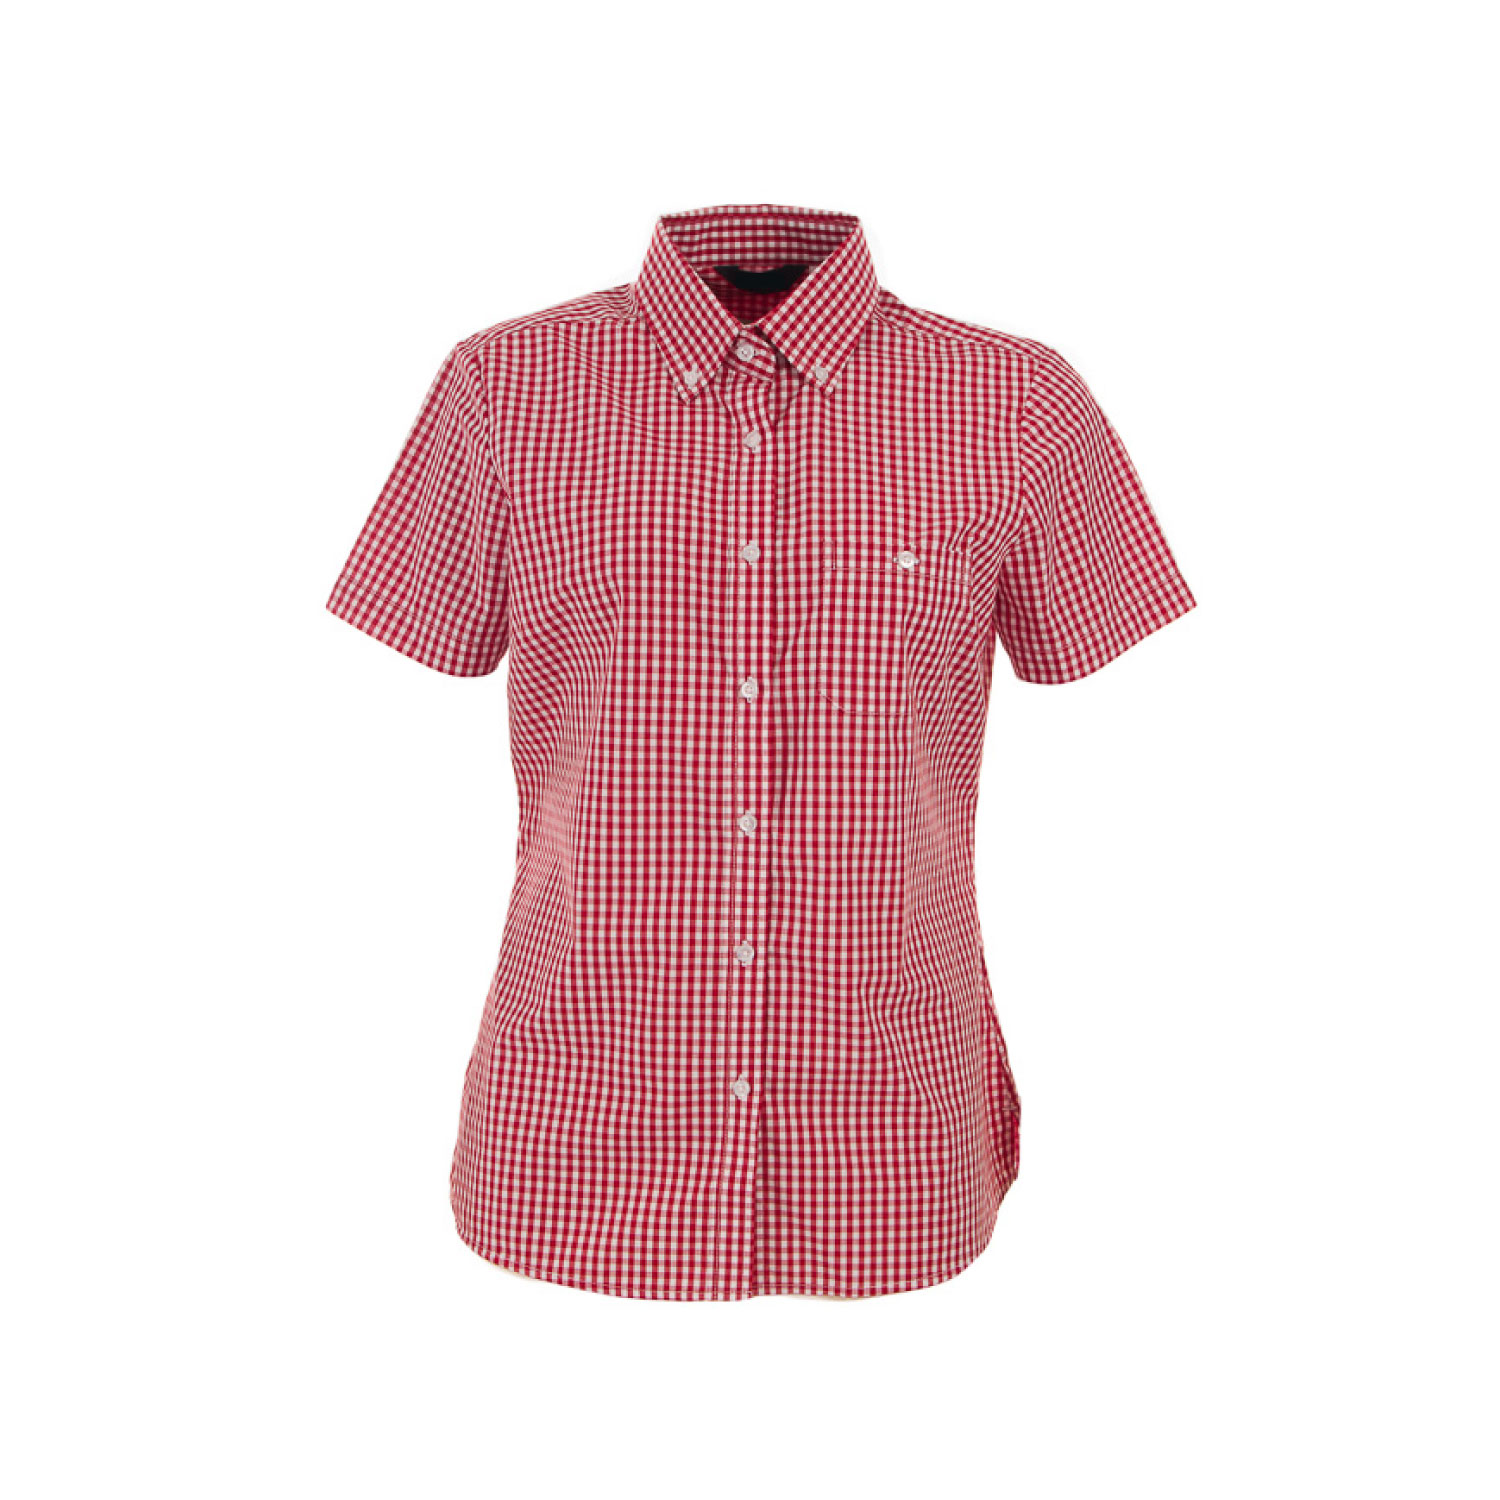 KE-ID-W47 - Ladies Short Sleeve Gingham Shirt — KE APPAREL